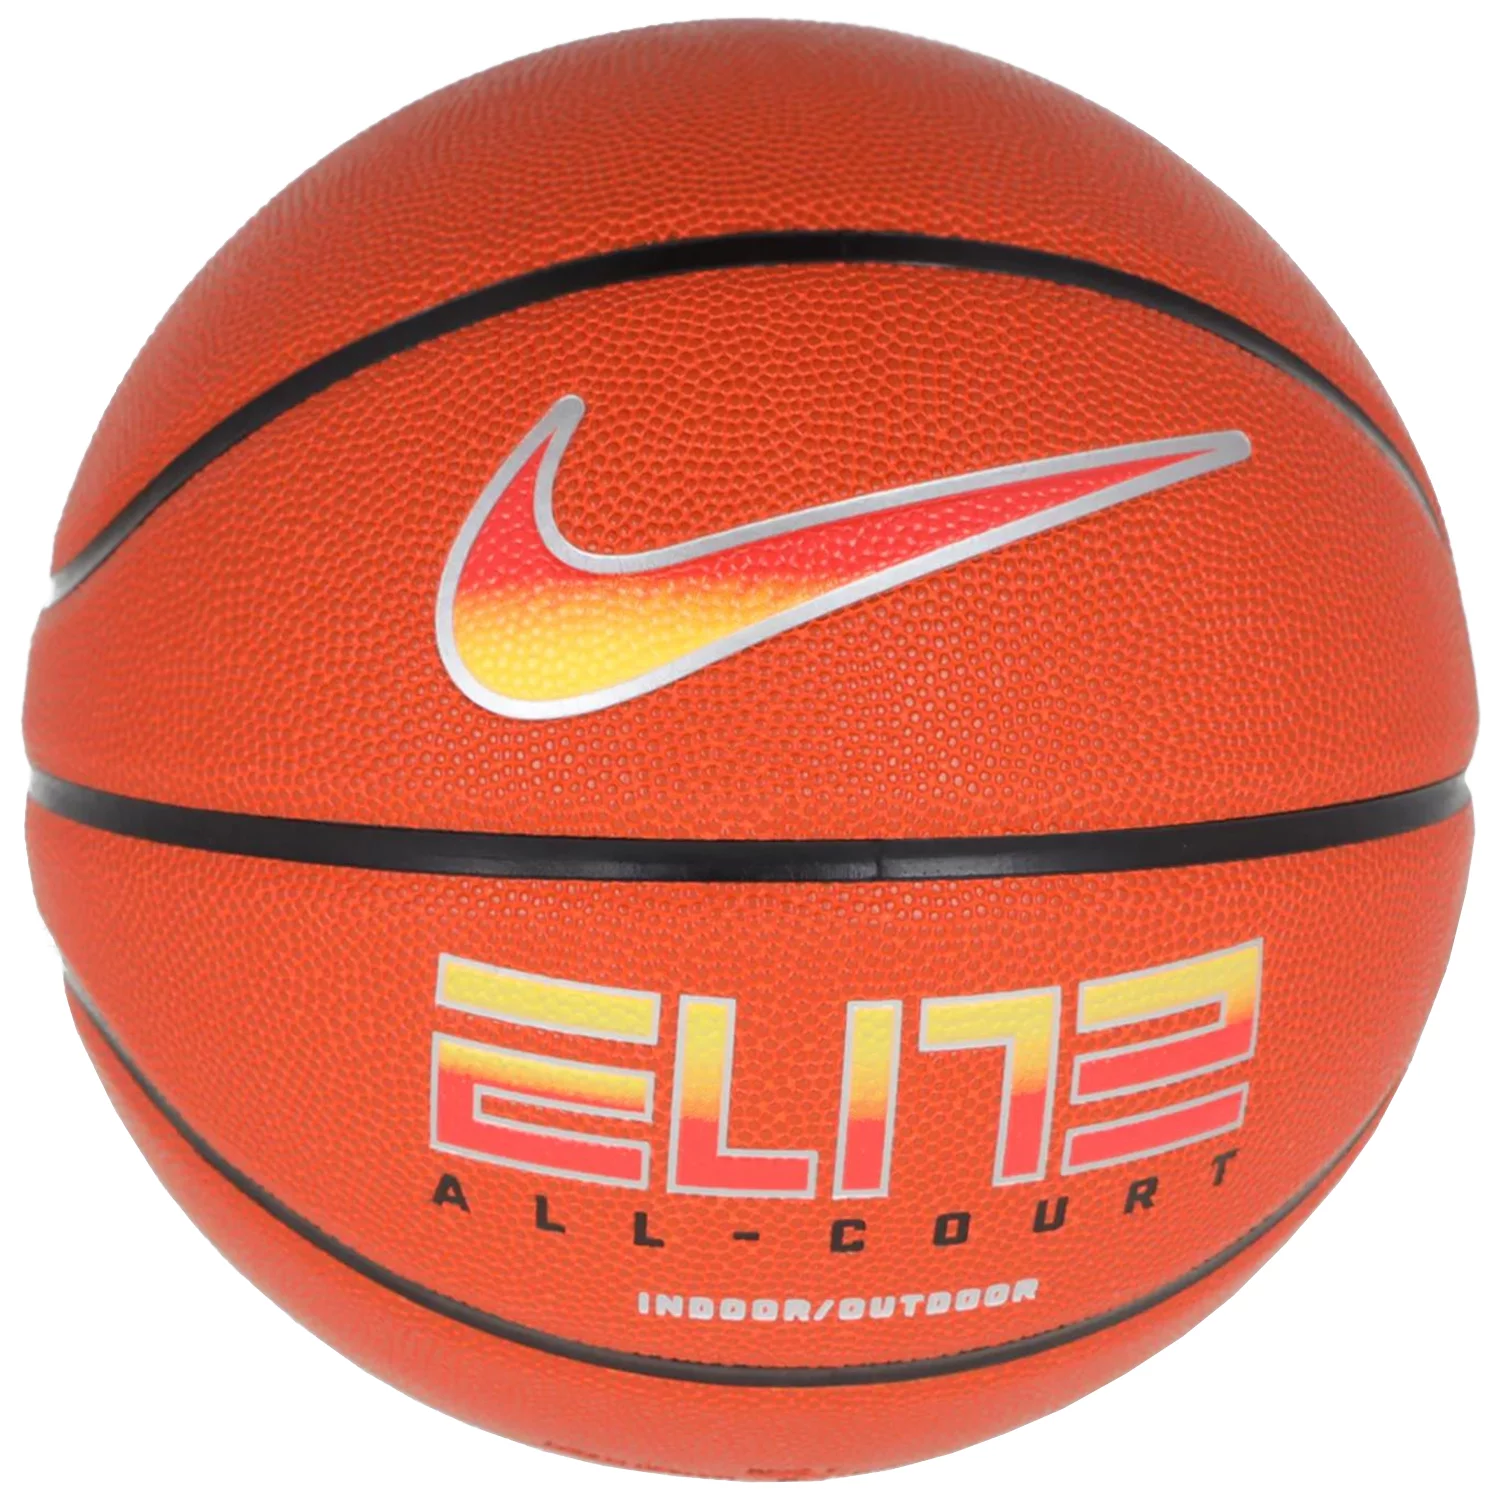 Zdjęcia - Piłka do koszykówki Nike Elite All Court 8P 2.0 Deflated Ball N1004088-820, Unisex, Pomarańczo 